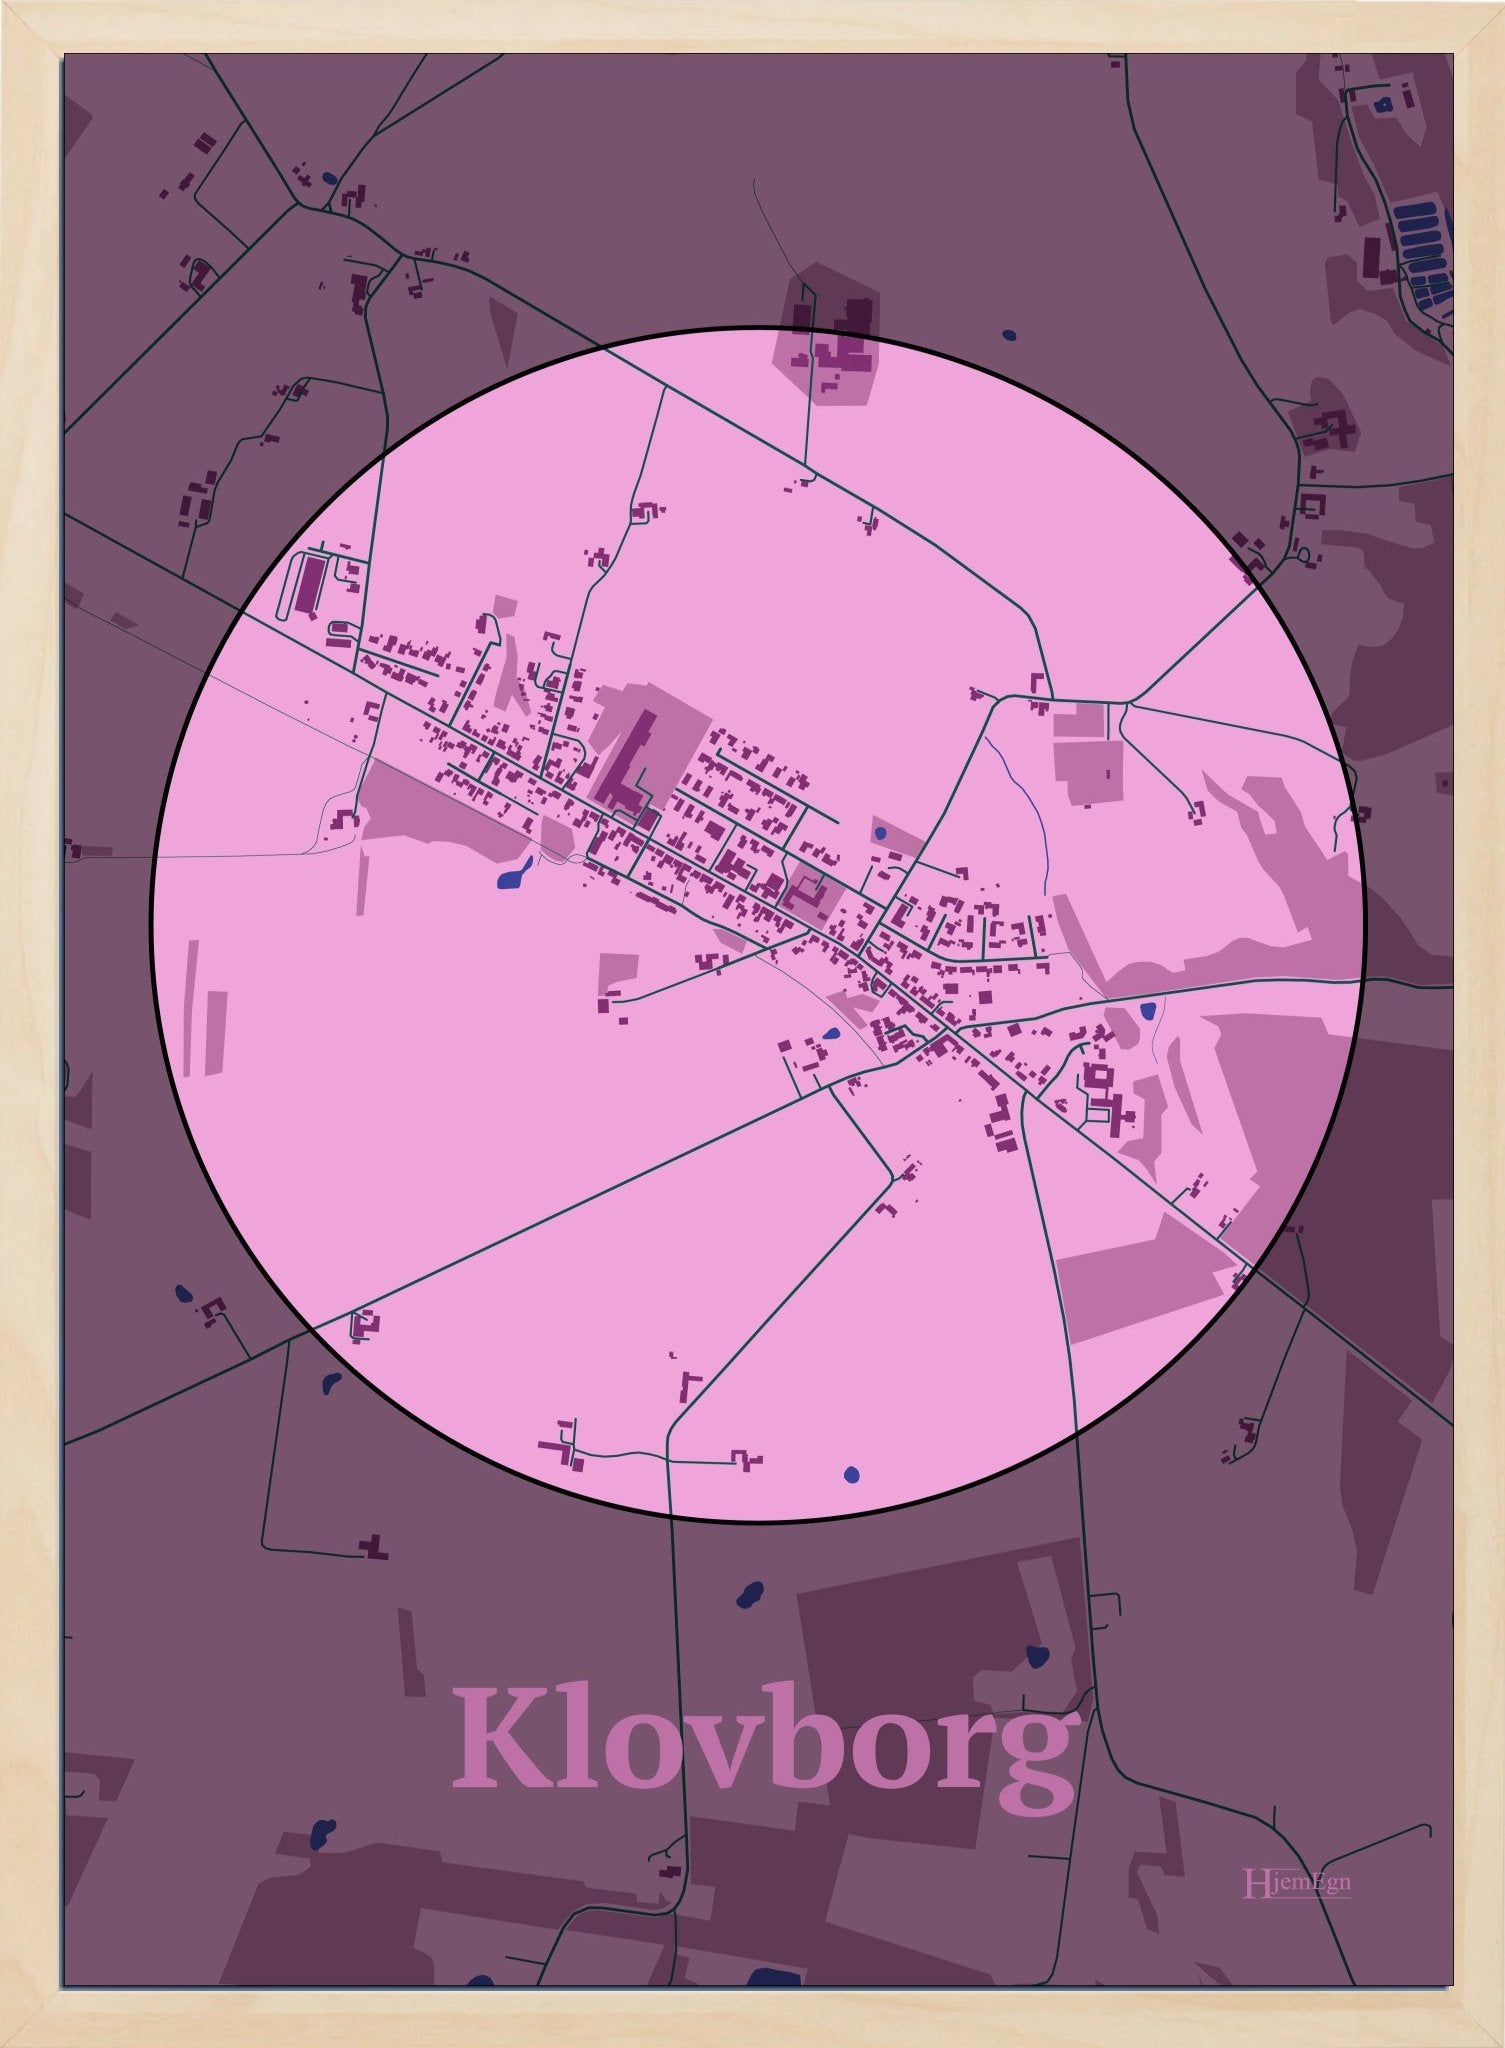 Klovborg plakat i farve pastel rød og HjemEgn.dk design centrum. Design bykort for Klovborg